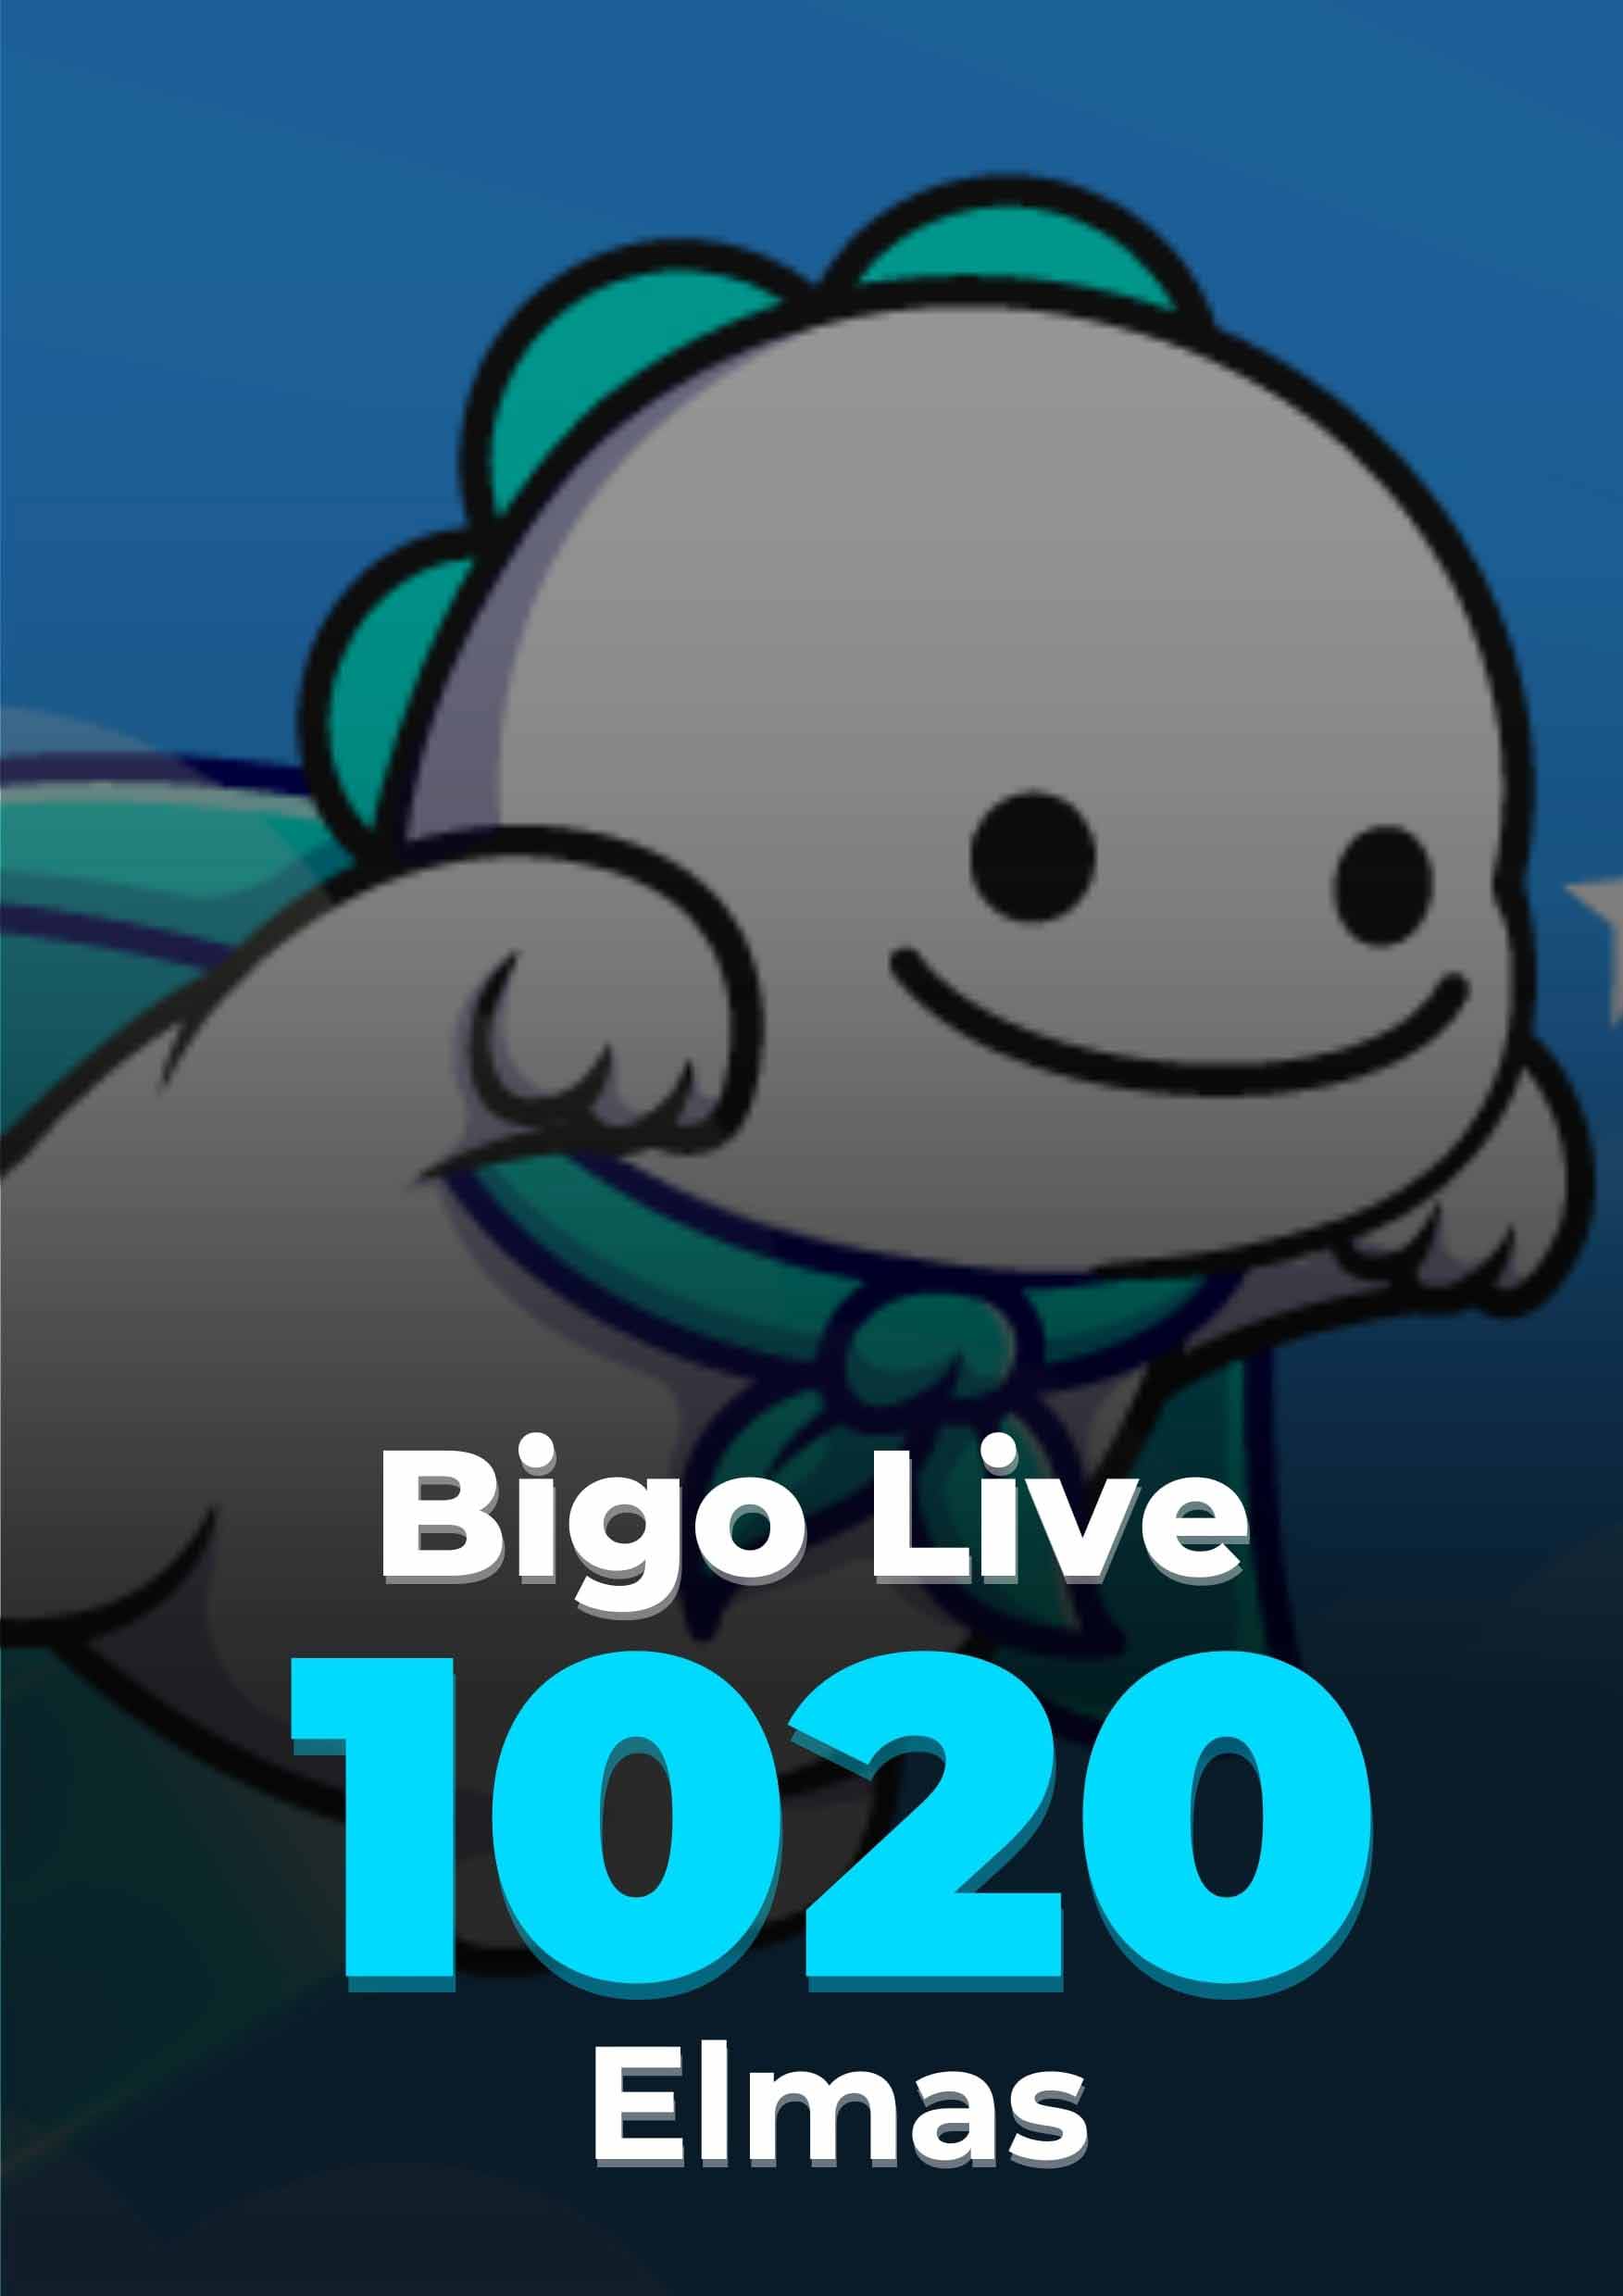 Bigo Live 1020 Elmas